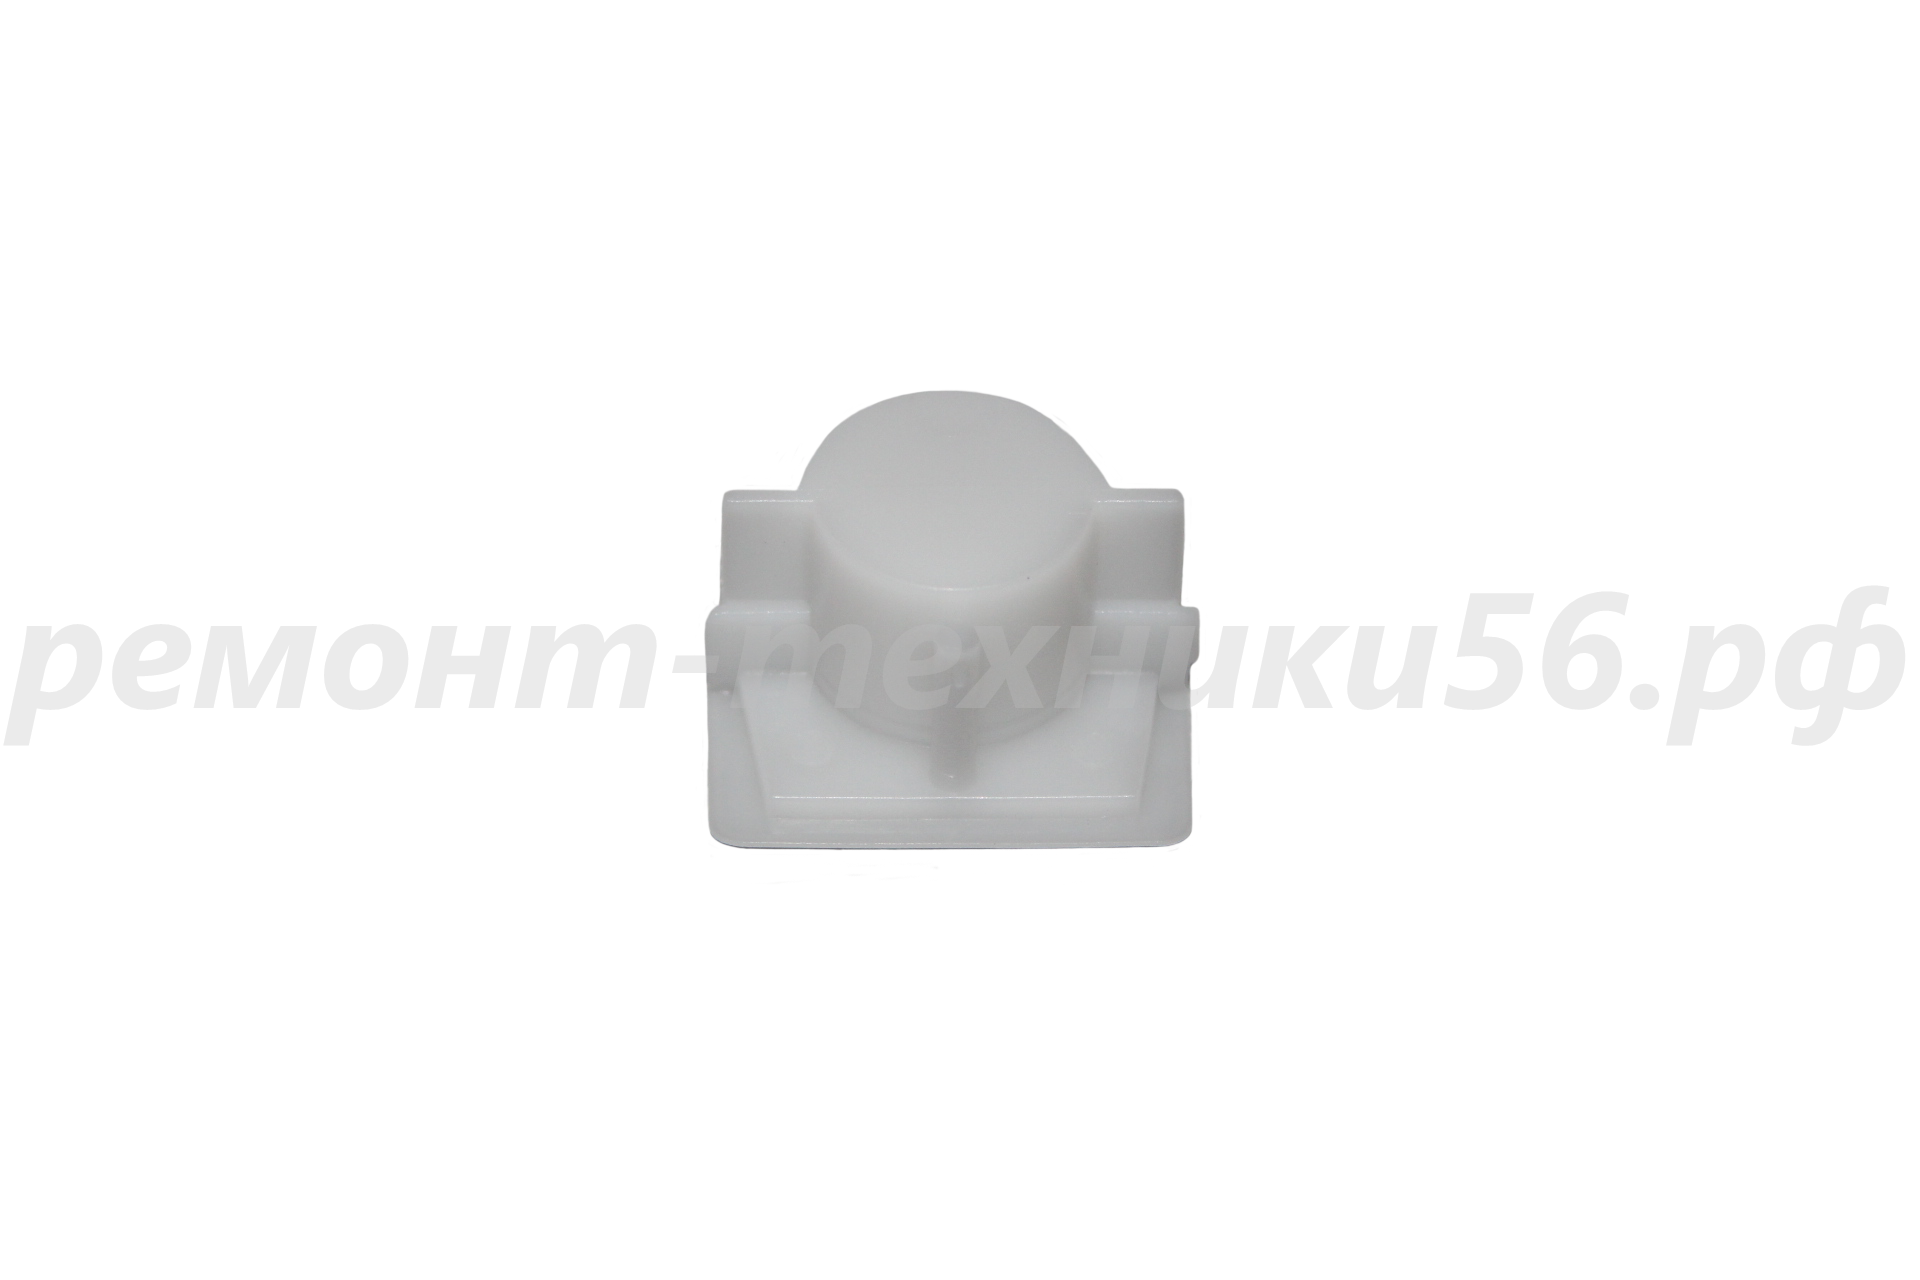 Подшипник скольжения задний Electrolux EHAW - 6525 (terracotta) - выгодная цена фото4